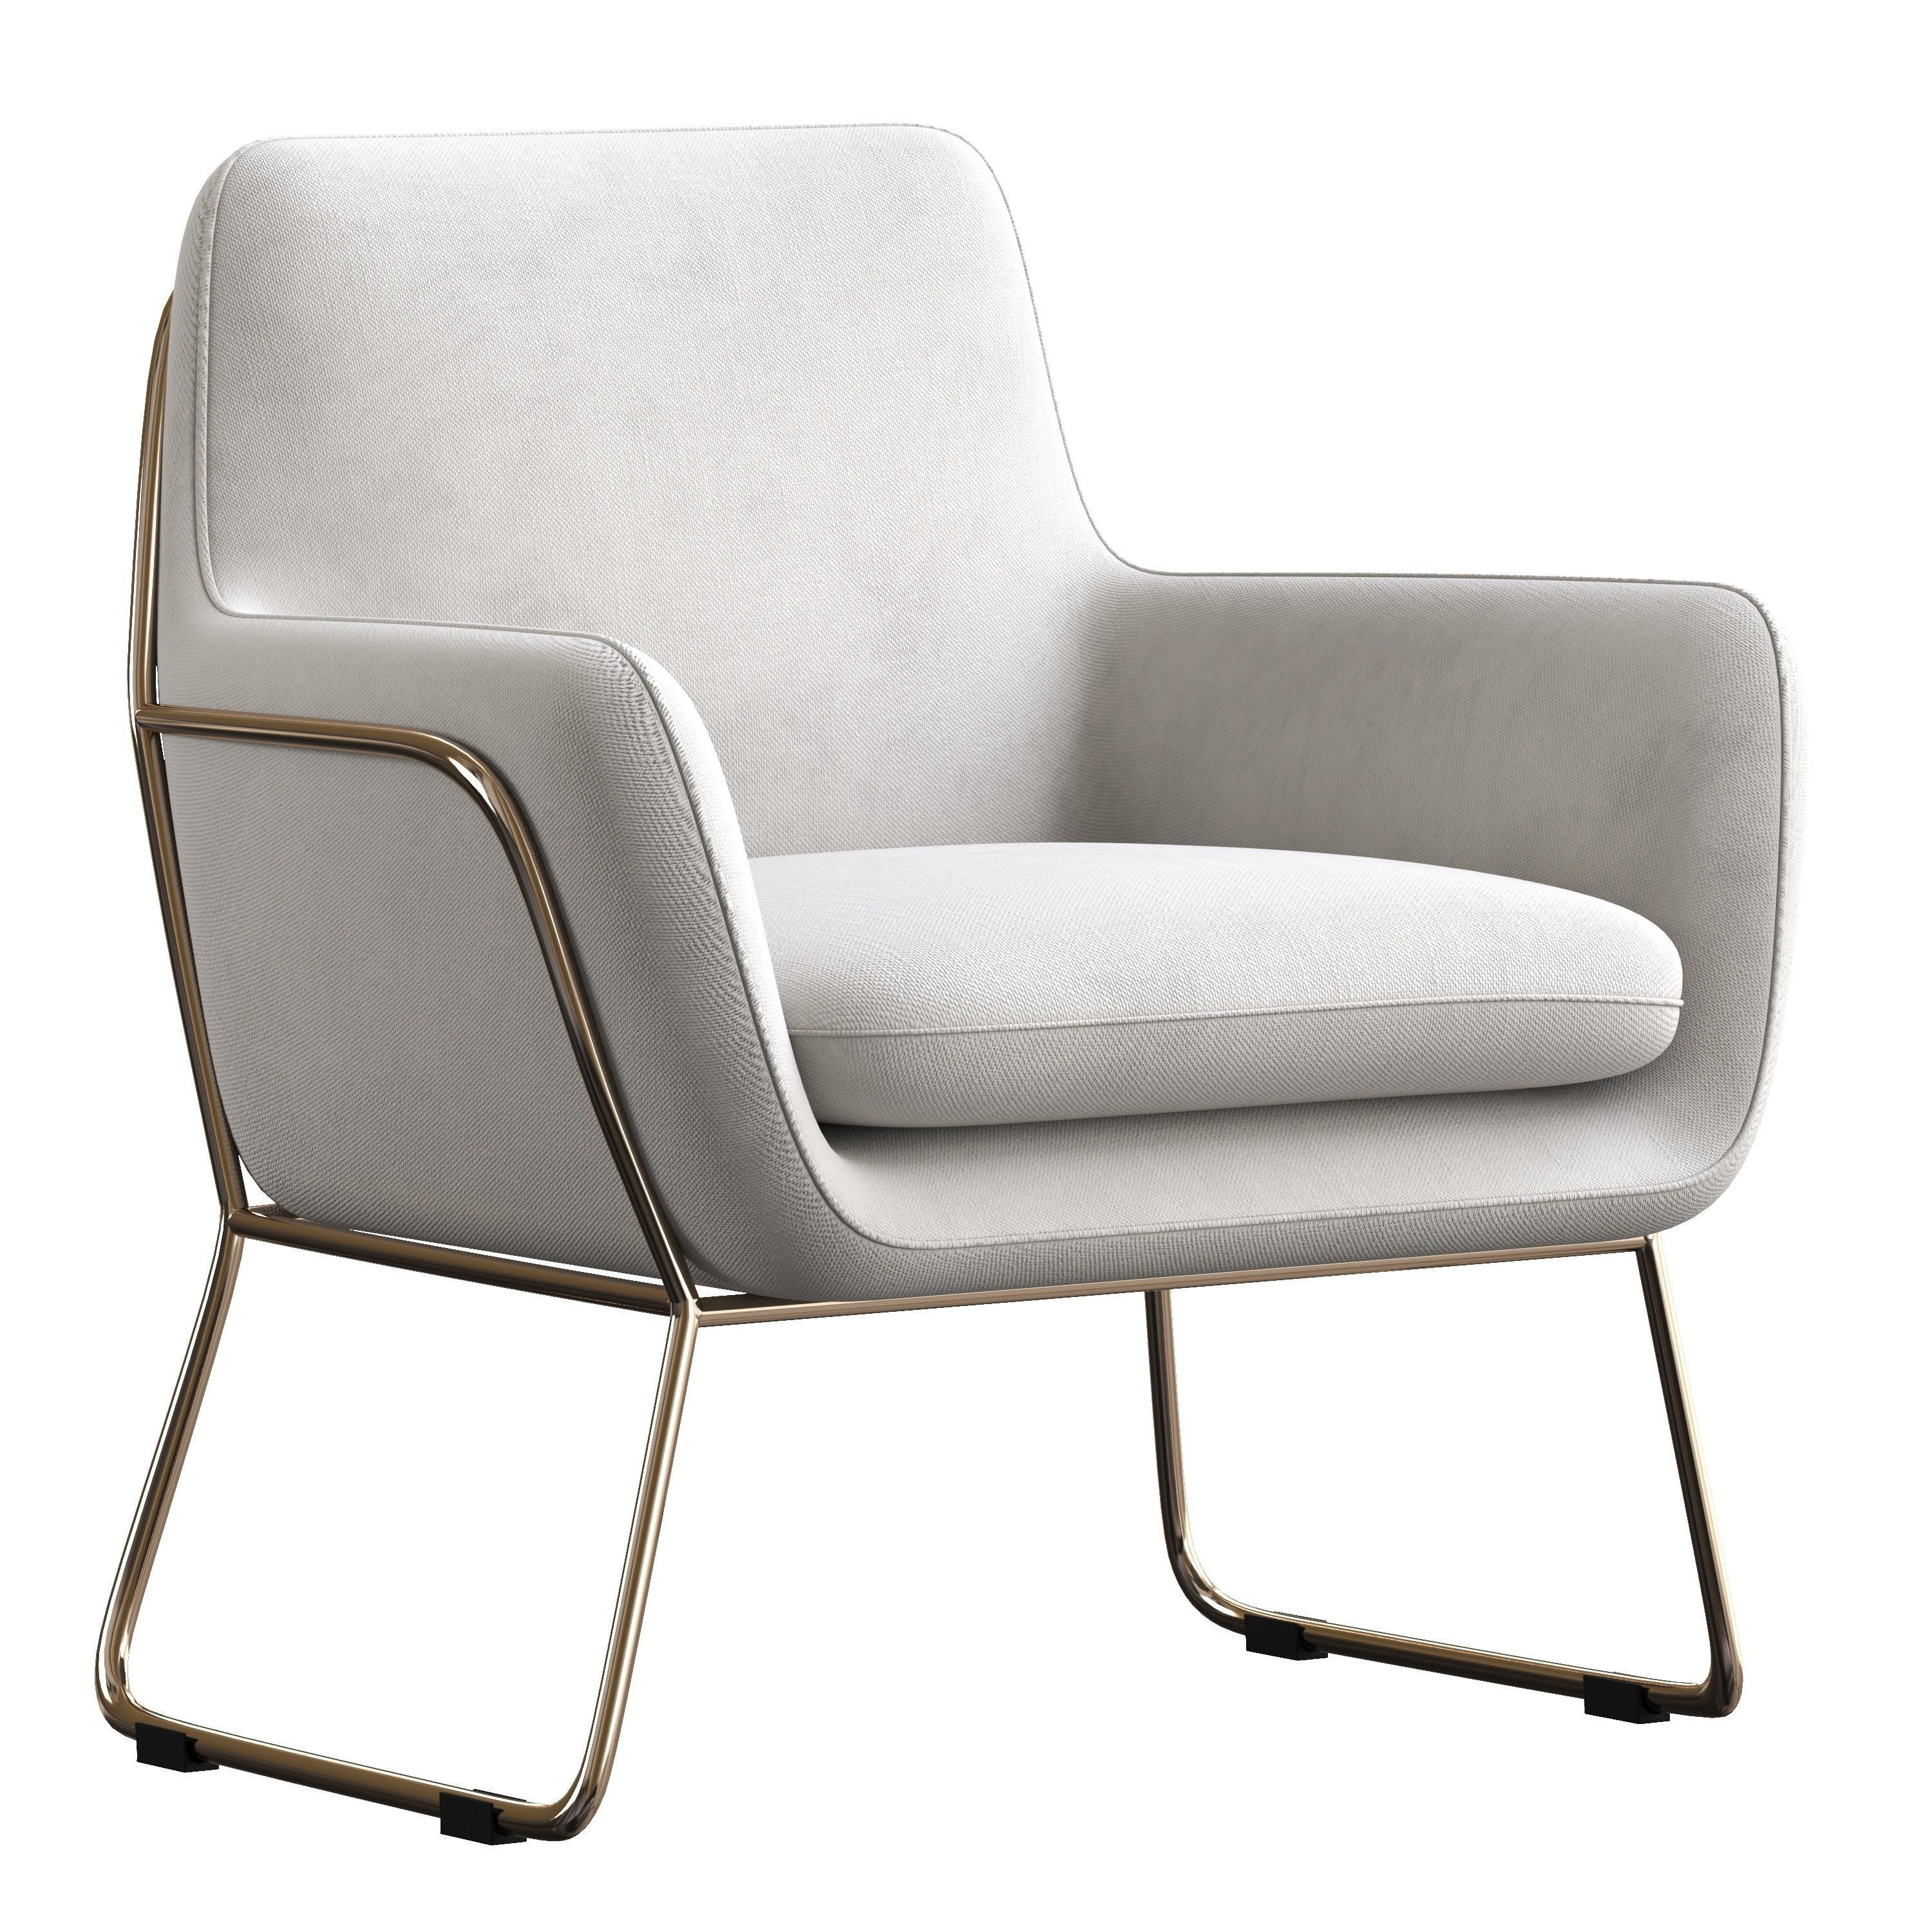 10赫尔曼扶手椅 布面座椅,休闲椅子,椅子 (1)3d模型下载